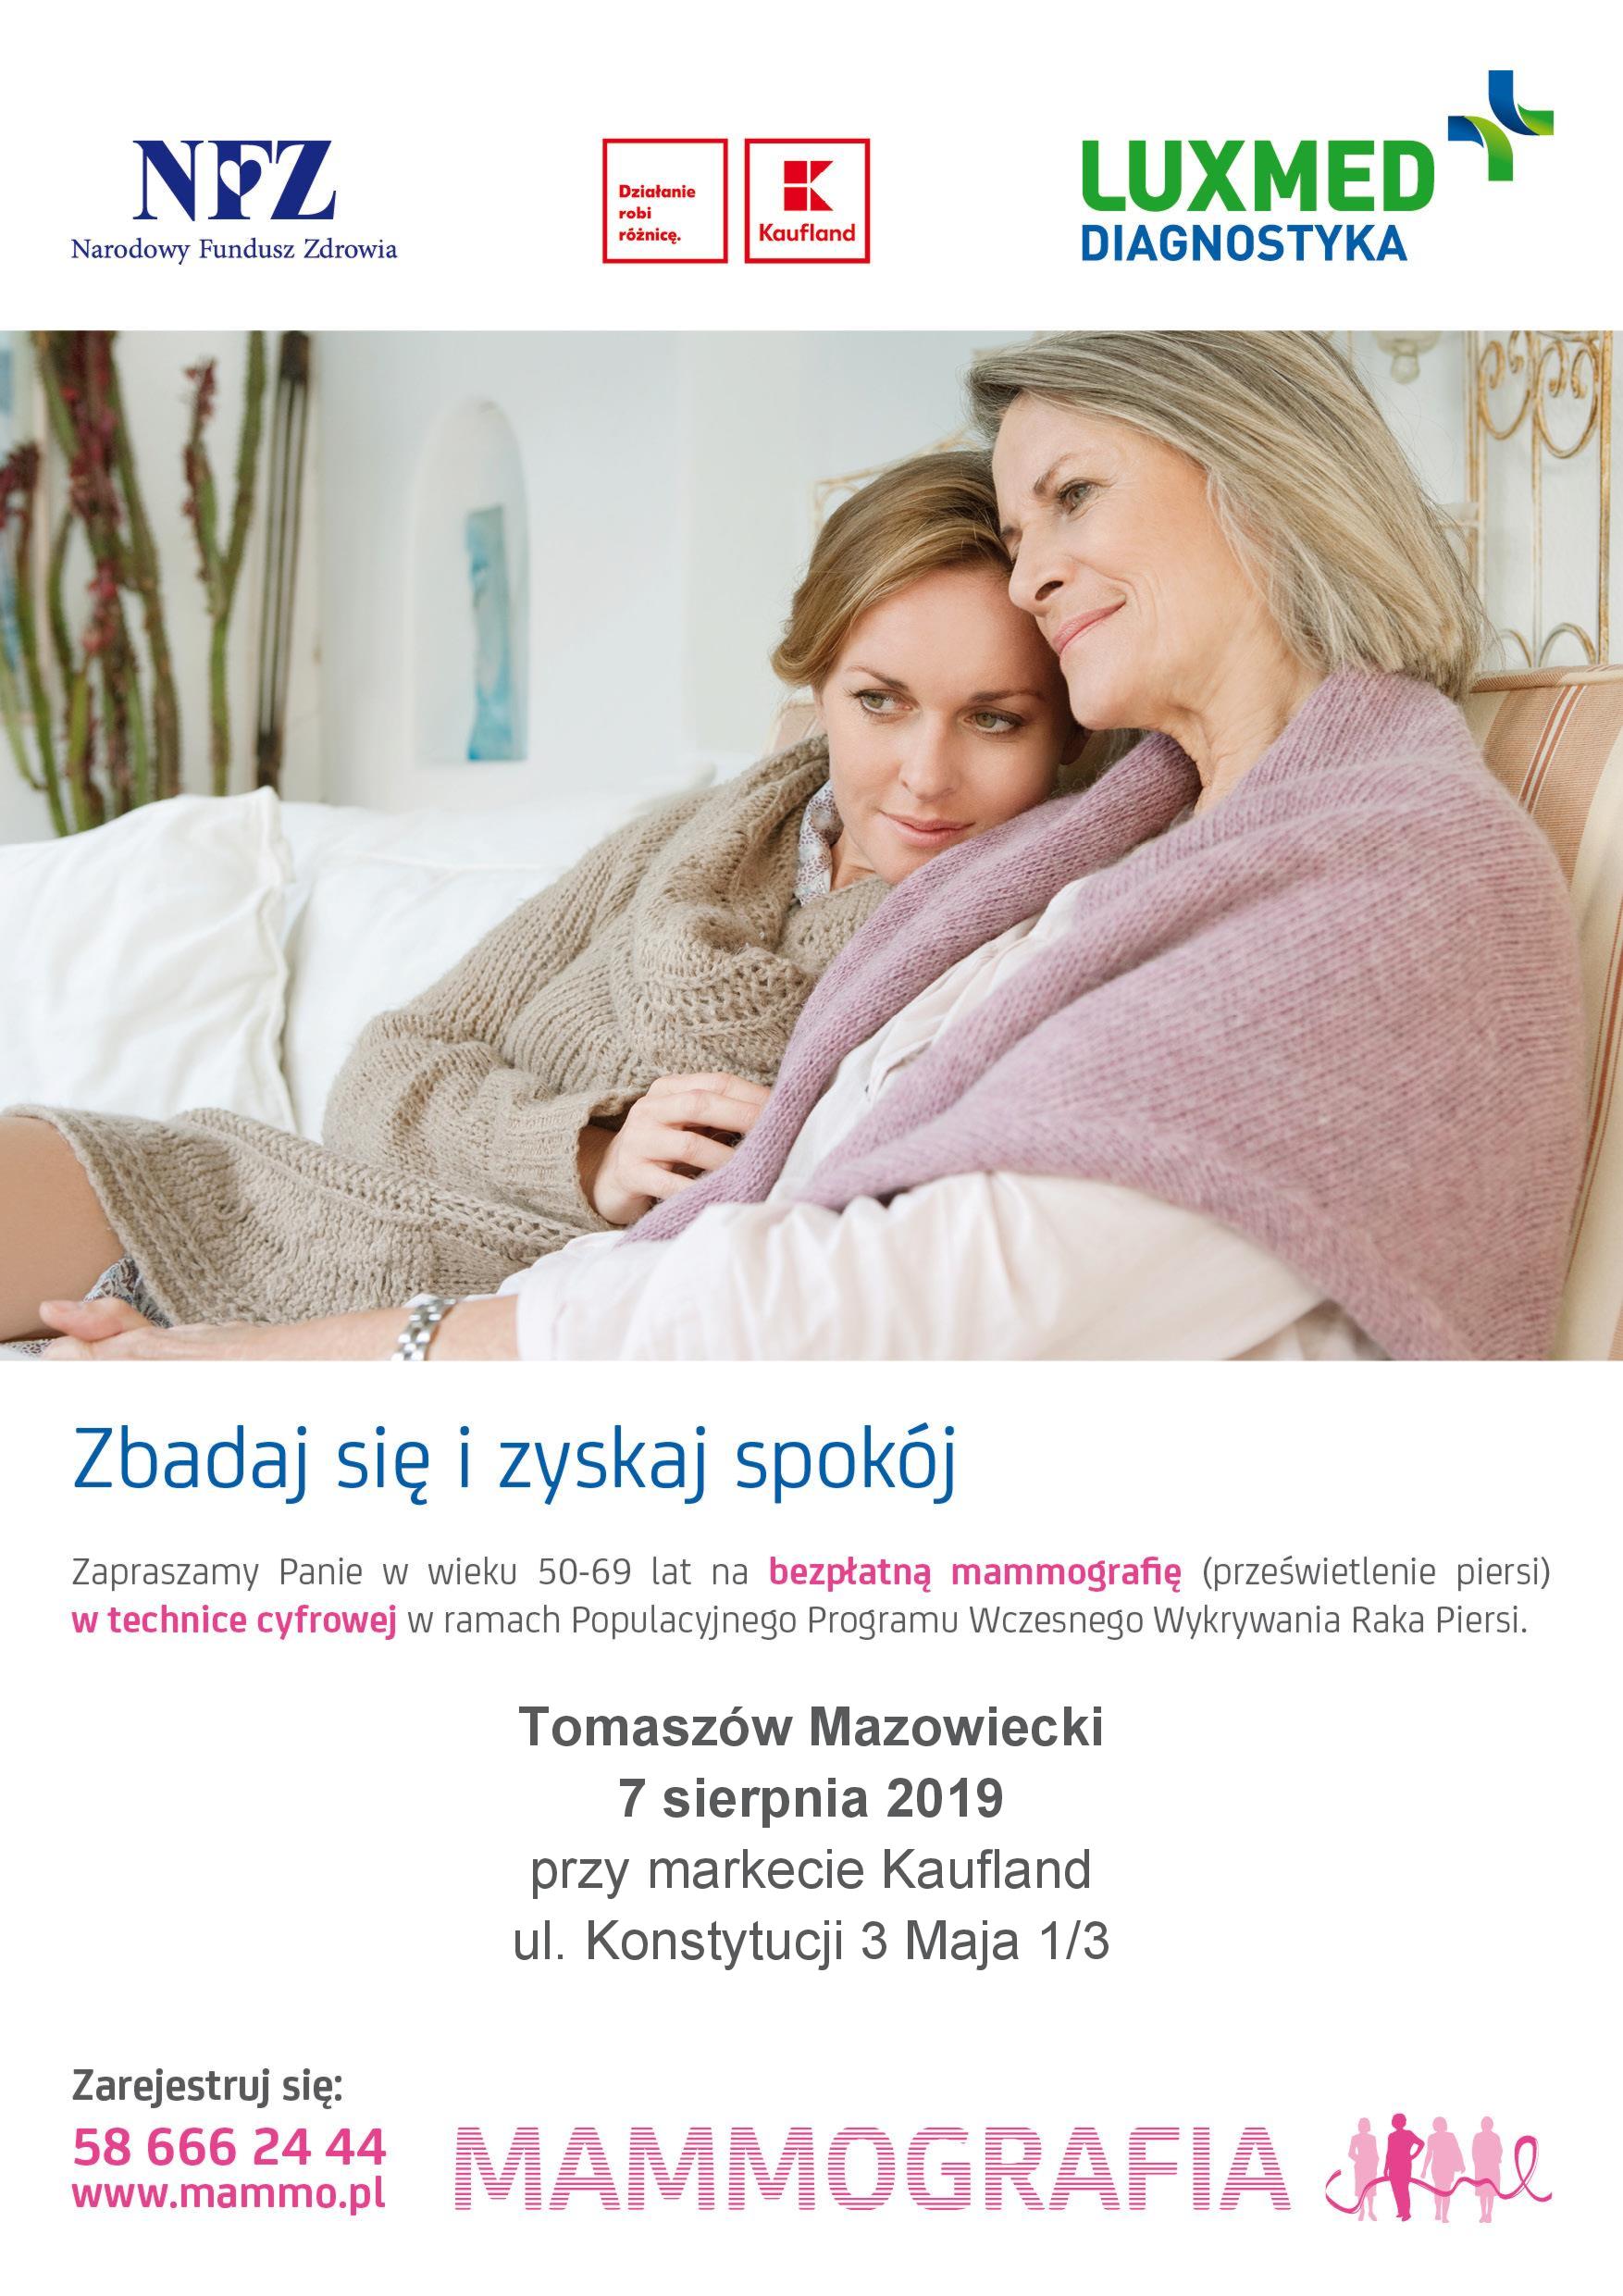 Plakat zapowiadający badania mammograficzne w Tomaszowie 7 sierpnia